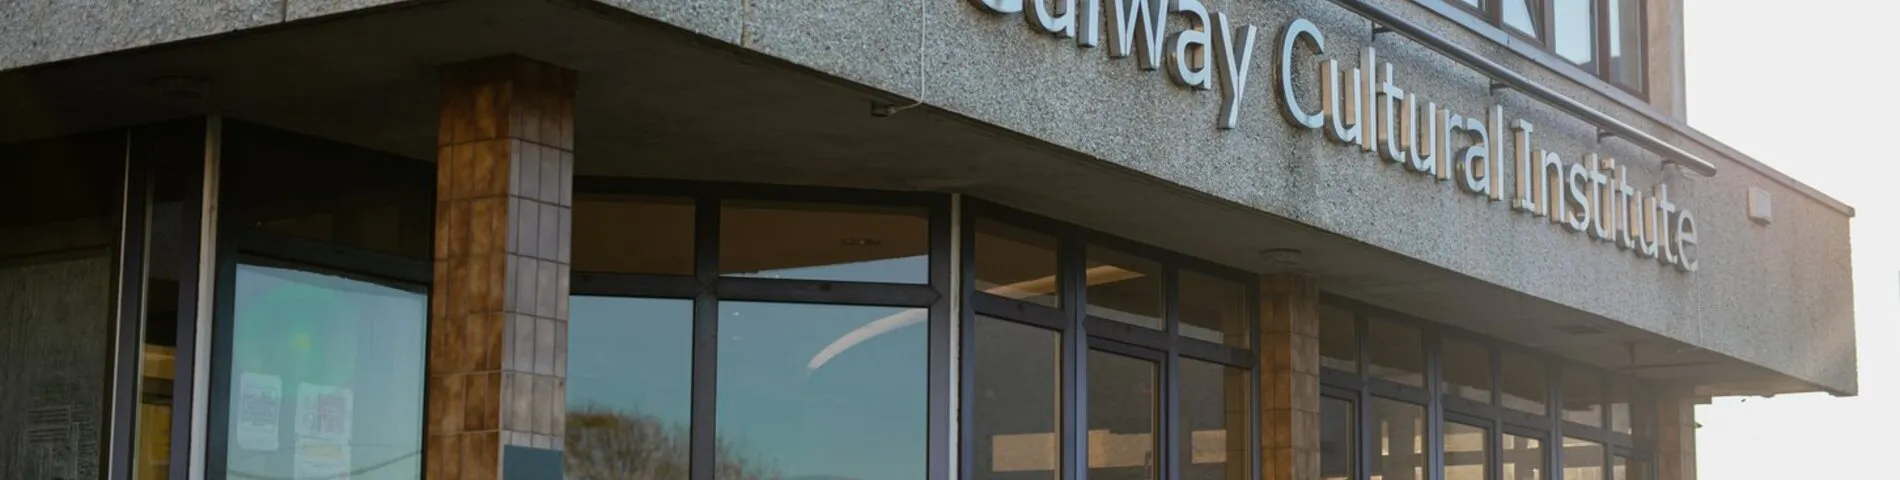 Galway Cultural Institute billede 1